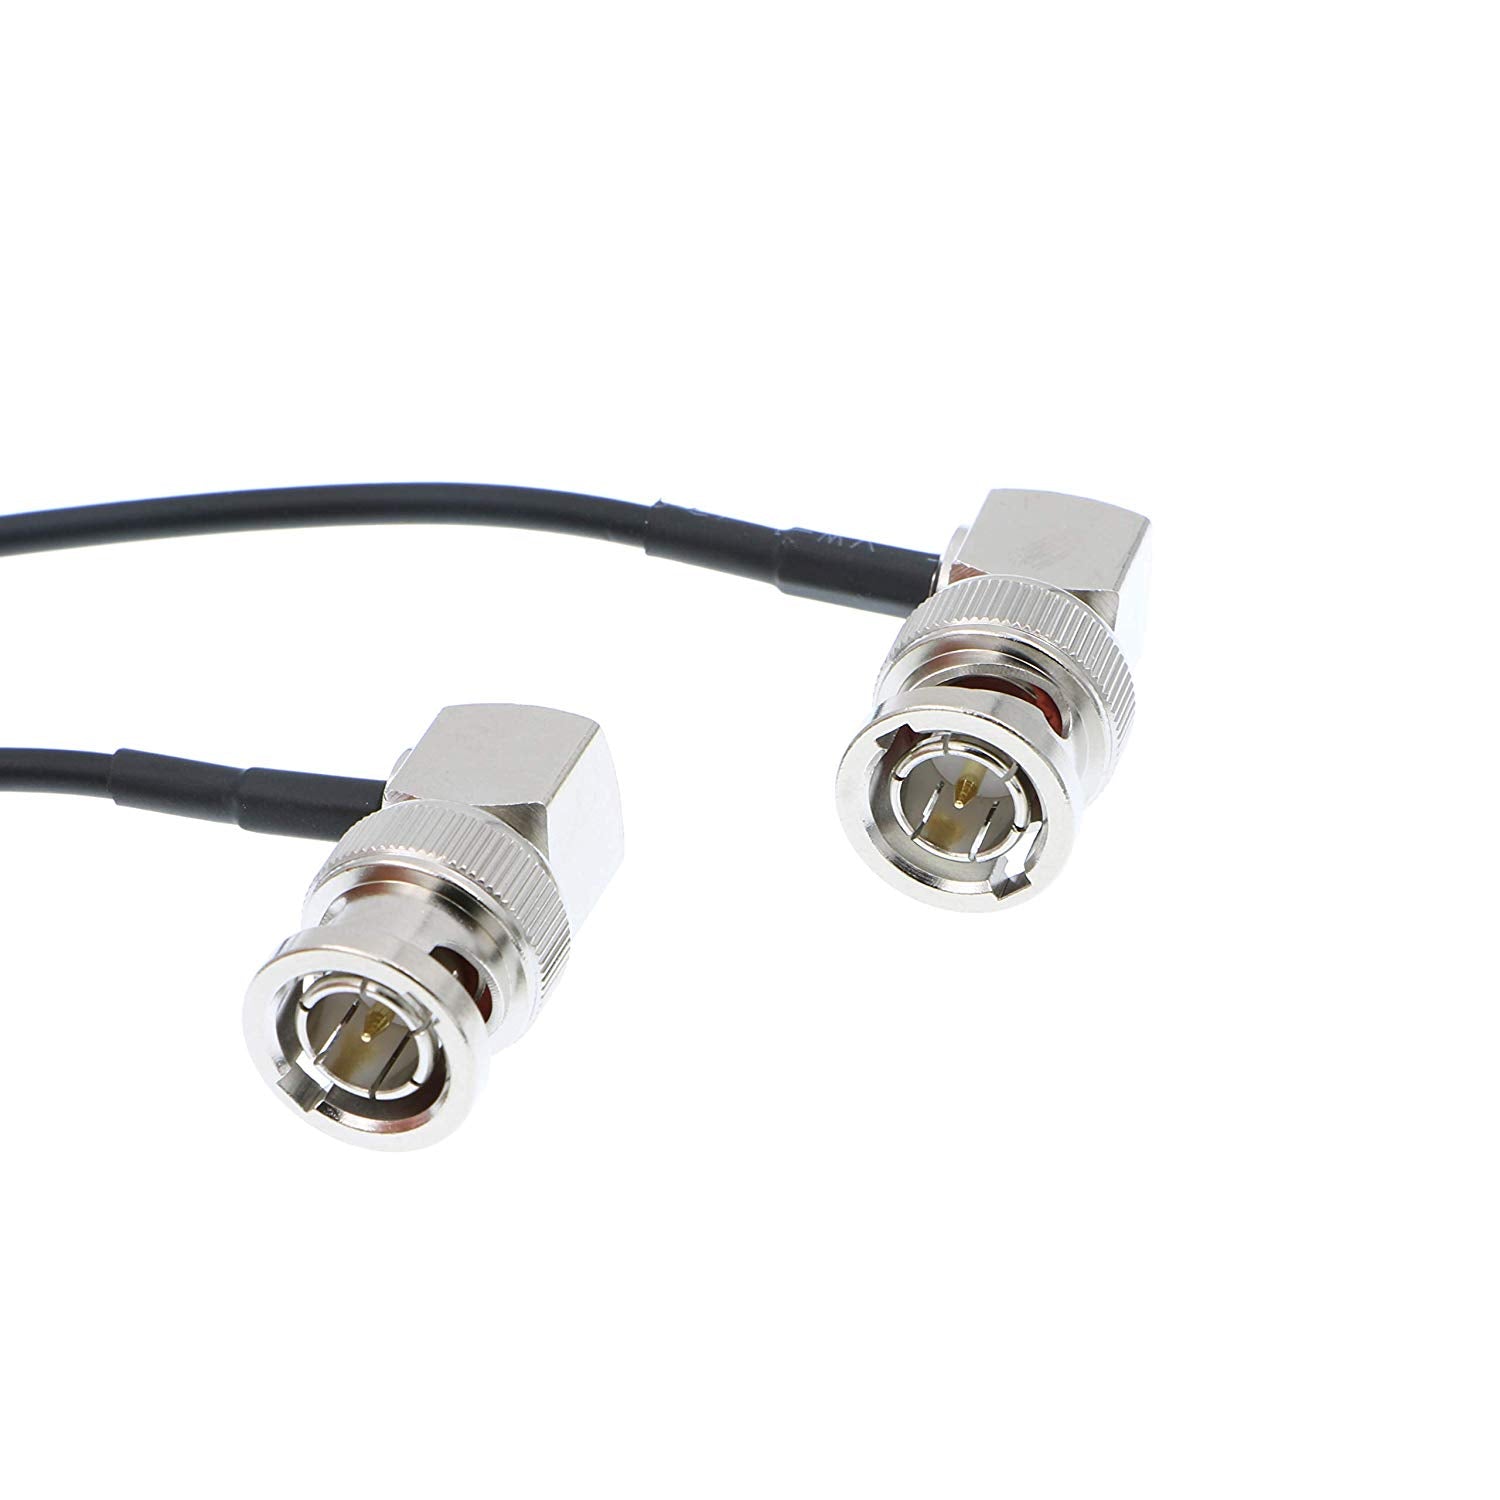 Alvin's Cables Blackmagic RG179 Coax BNC Right Angle Male to Male Flexible HD SDI Cable for BMCC Video Camera